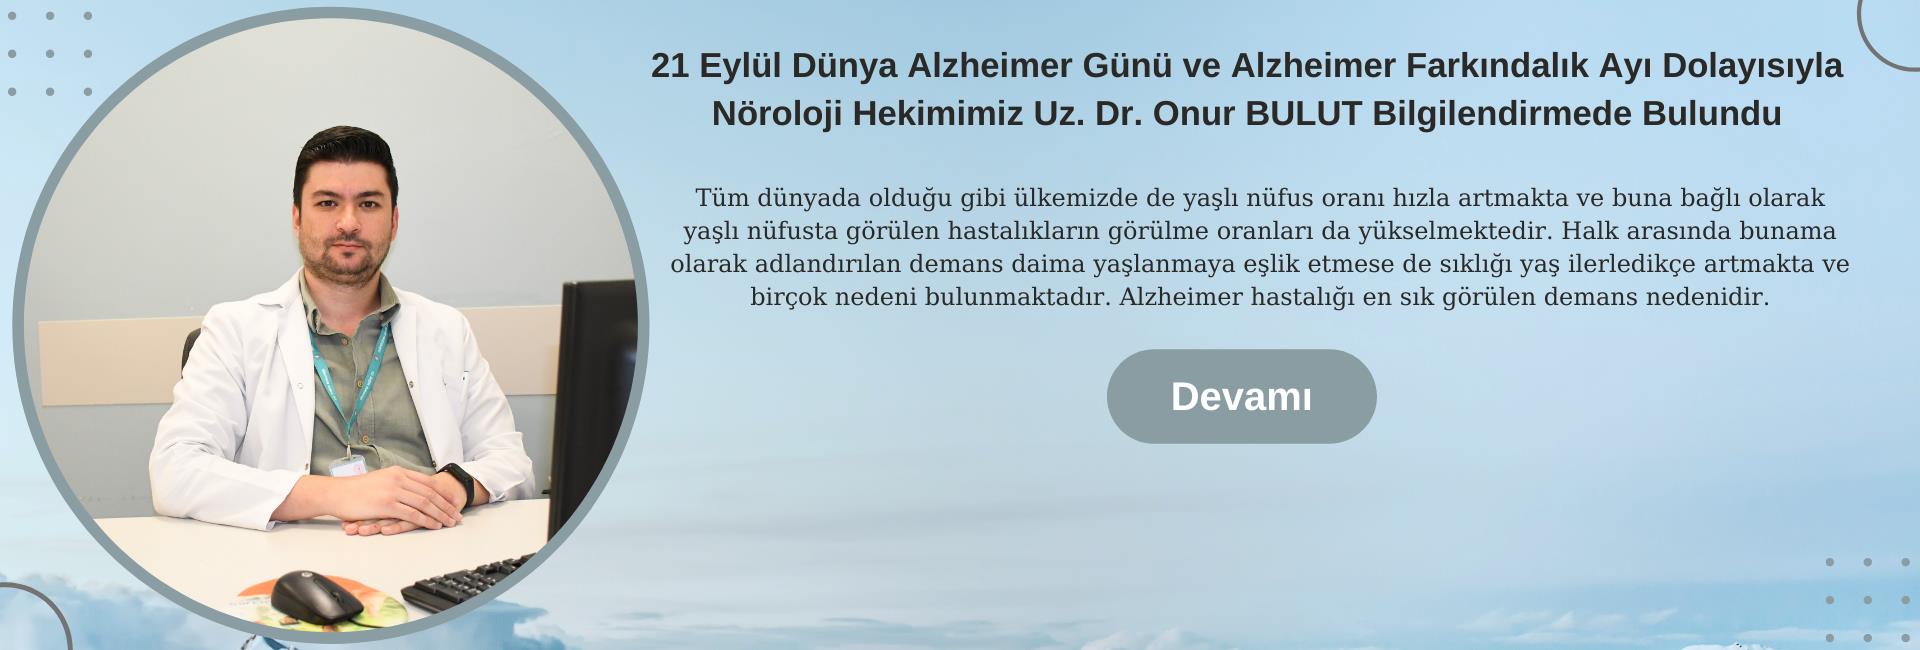 21 Eylül Dünya Alzheimer Günü ve Alzheimer Farkındalık Ayı Dolayısıyla Nöroloji Hekimimiz Uz. Dr. Onur BULUT Bilgilendirmede Bulundu